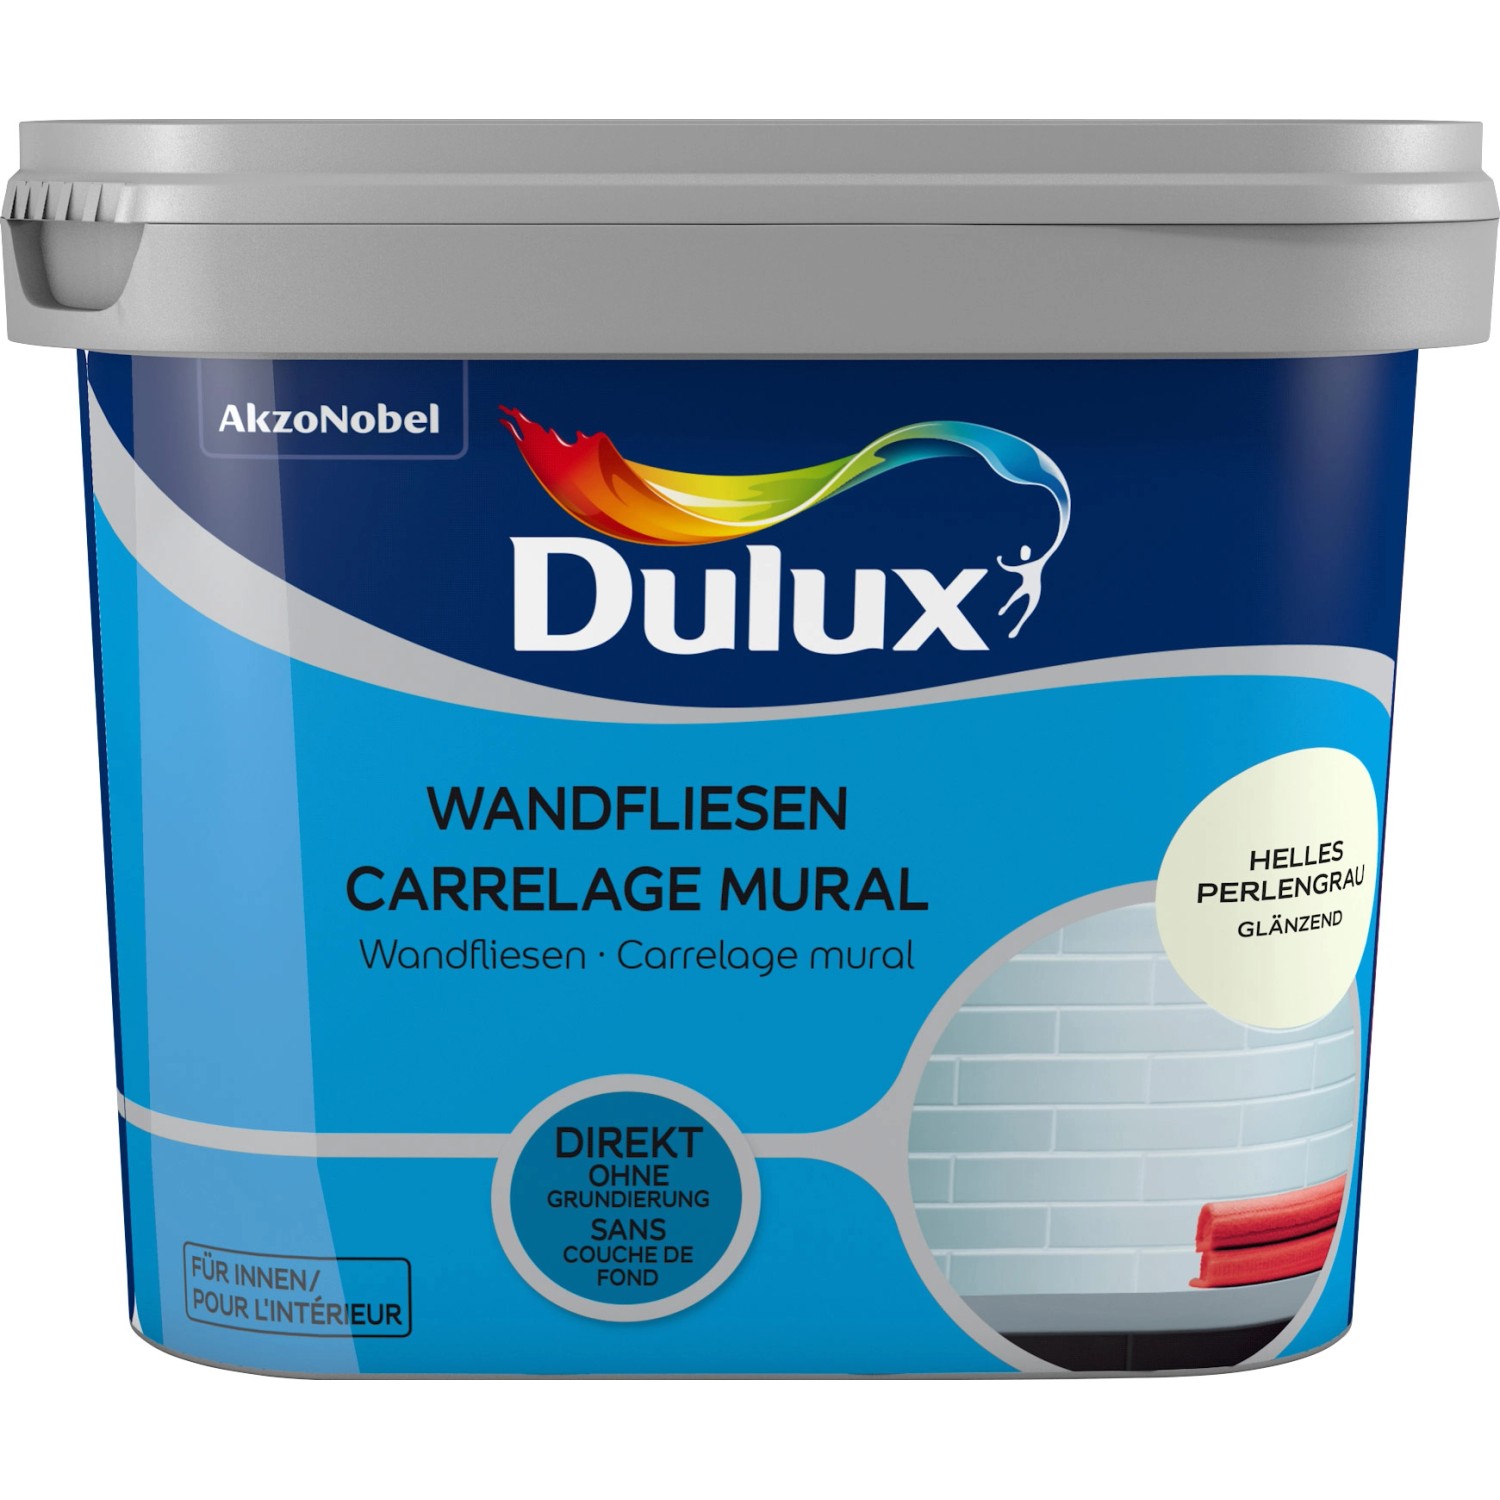 Dulux Fresh Up Wandfliesenlack Glänzend Helles Perlgrau 750 ml günstig online kaufen